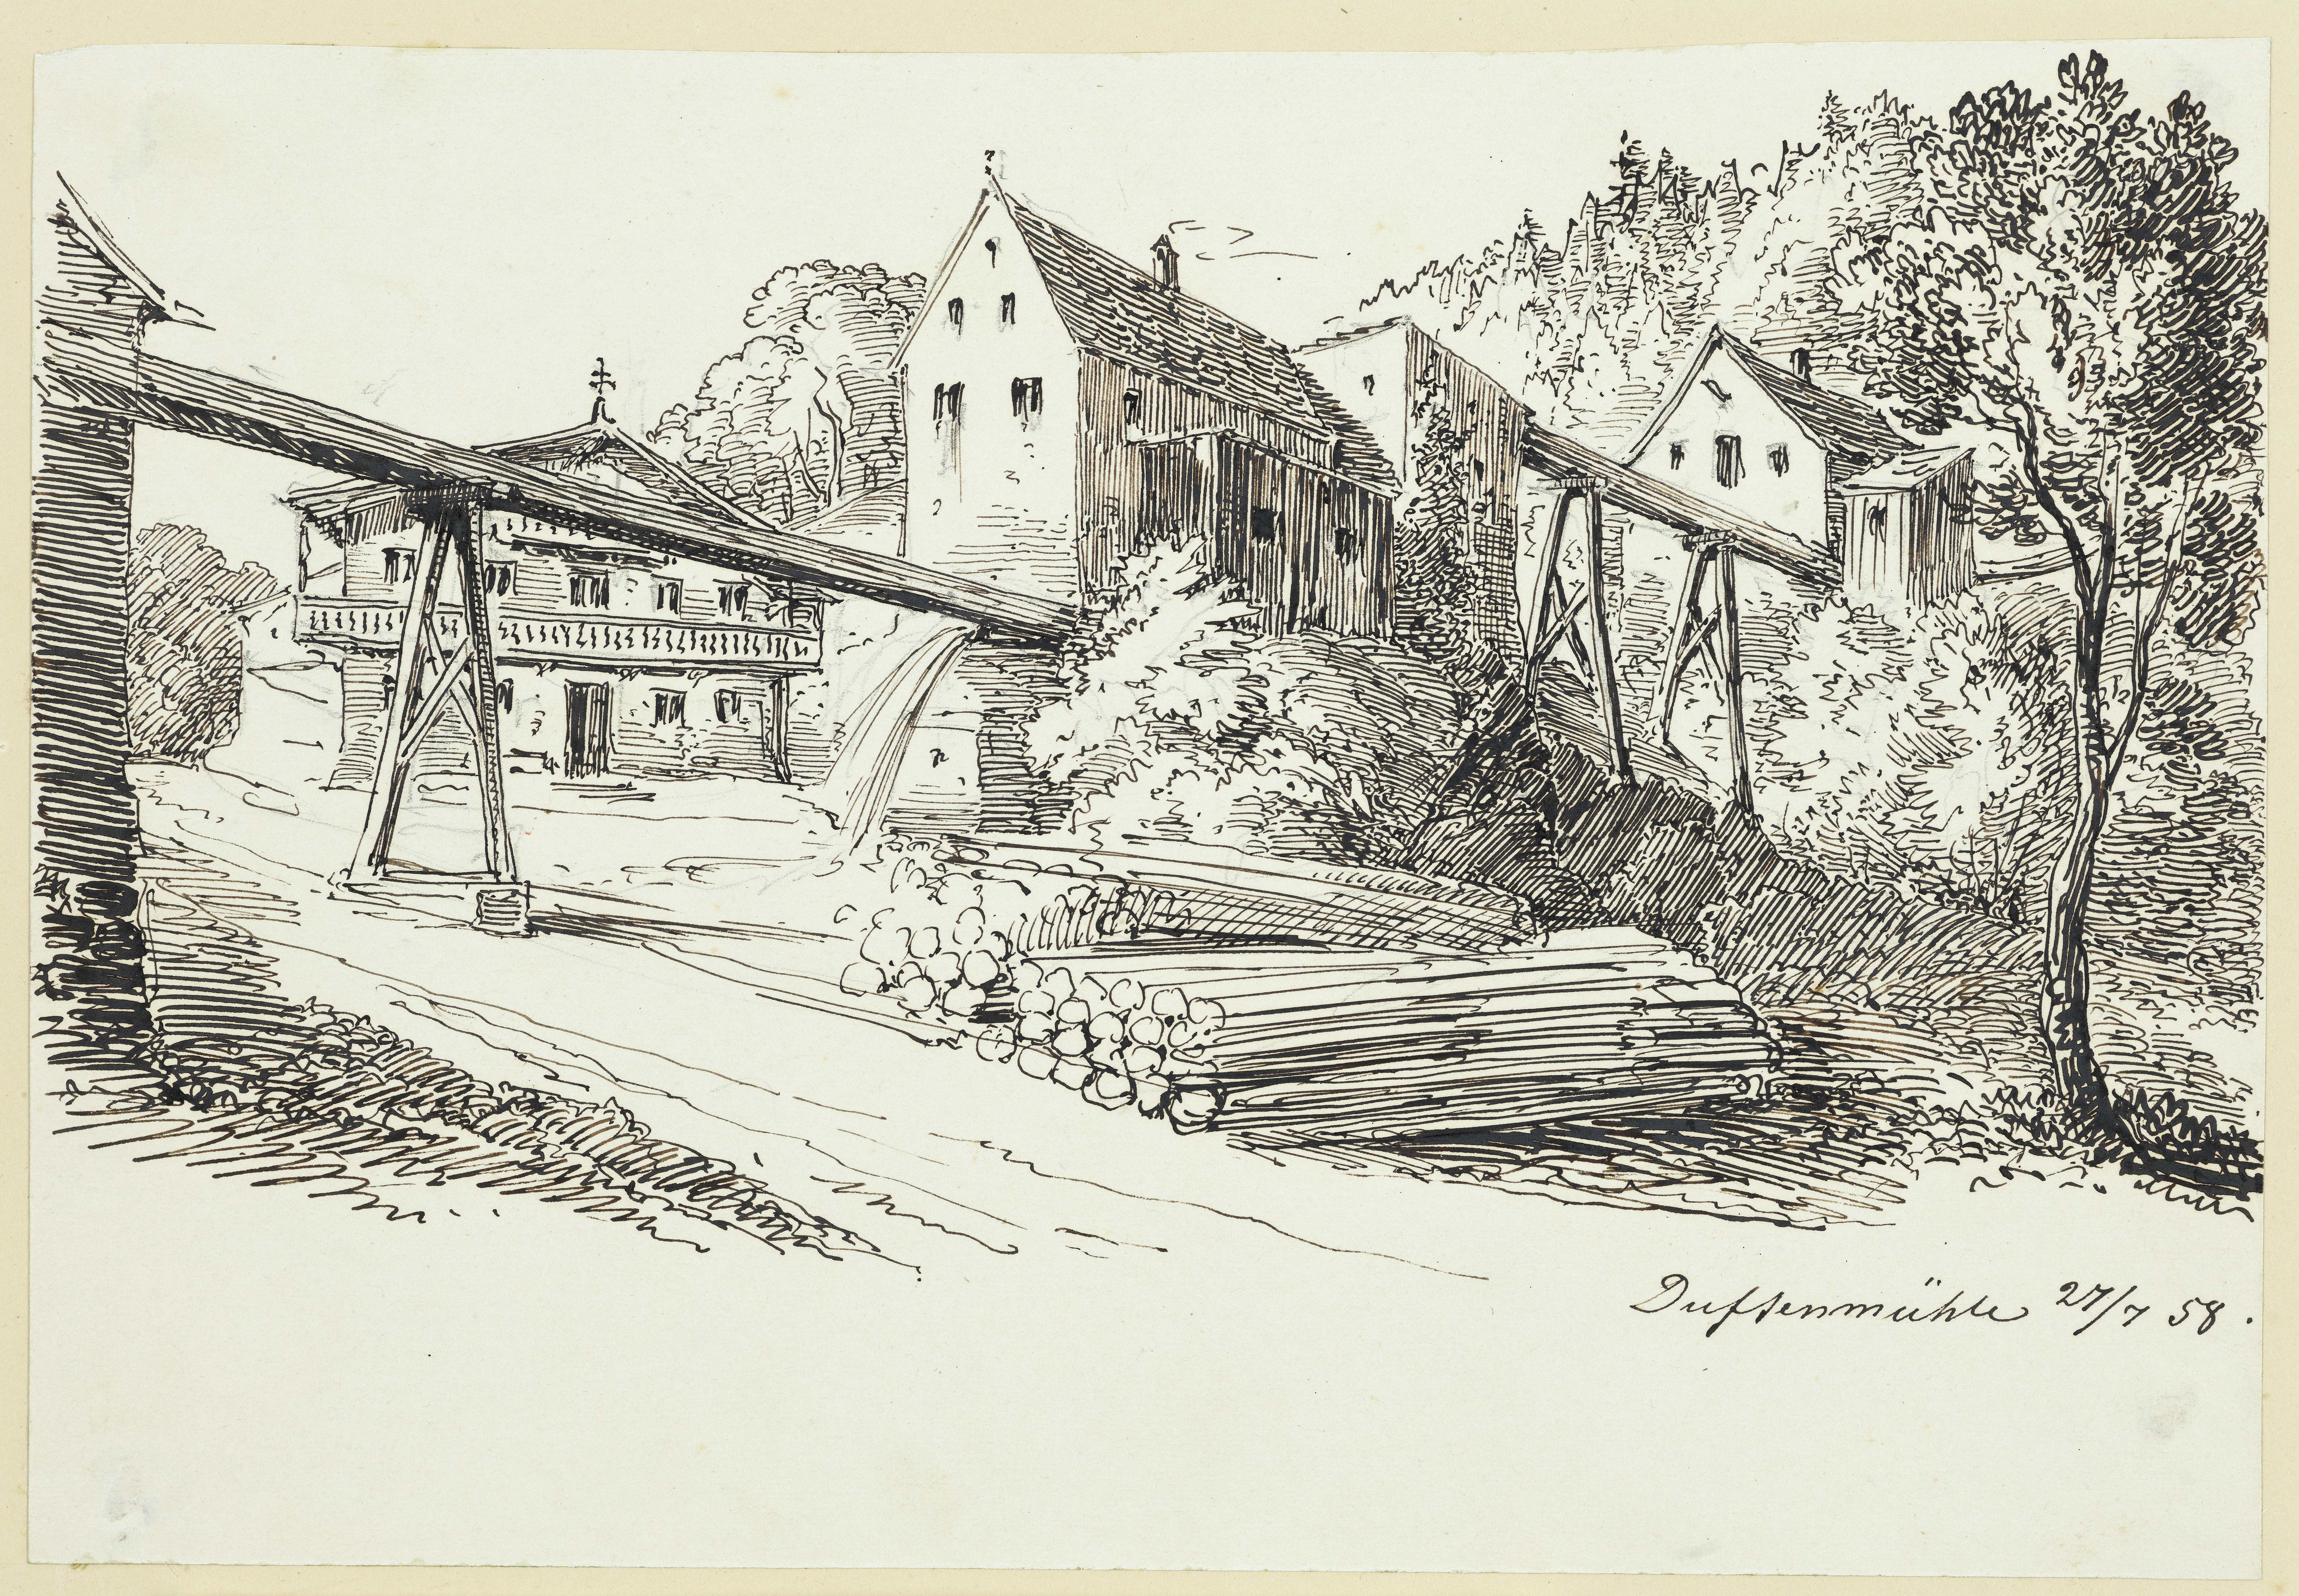 Stüler, Friedrich August: Tuftenmühle in Tegernsee, 1858, SPSG, GK II (5) 3321. (Stiftung Preußische Schlösser und Gärten Berlin-Brandenburg CC BY-NC-SA)